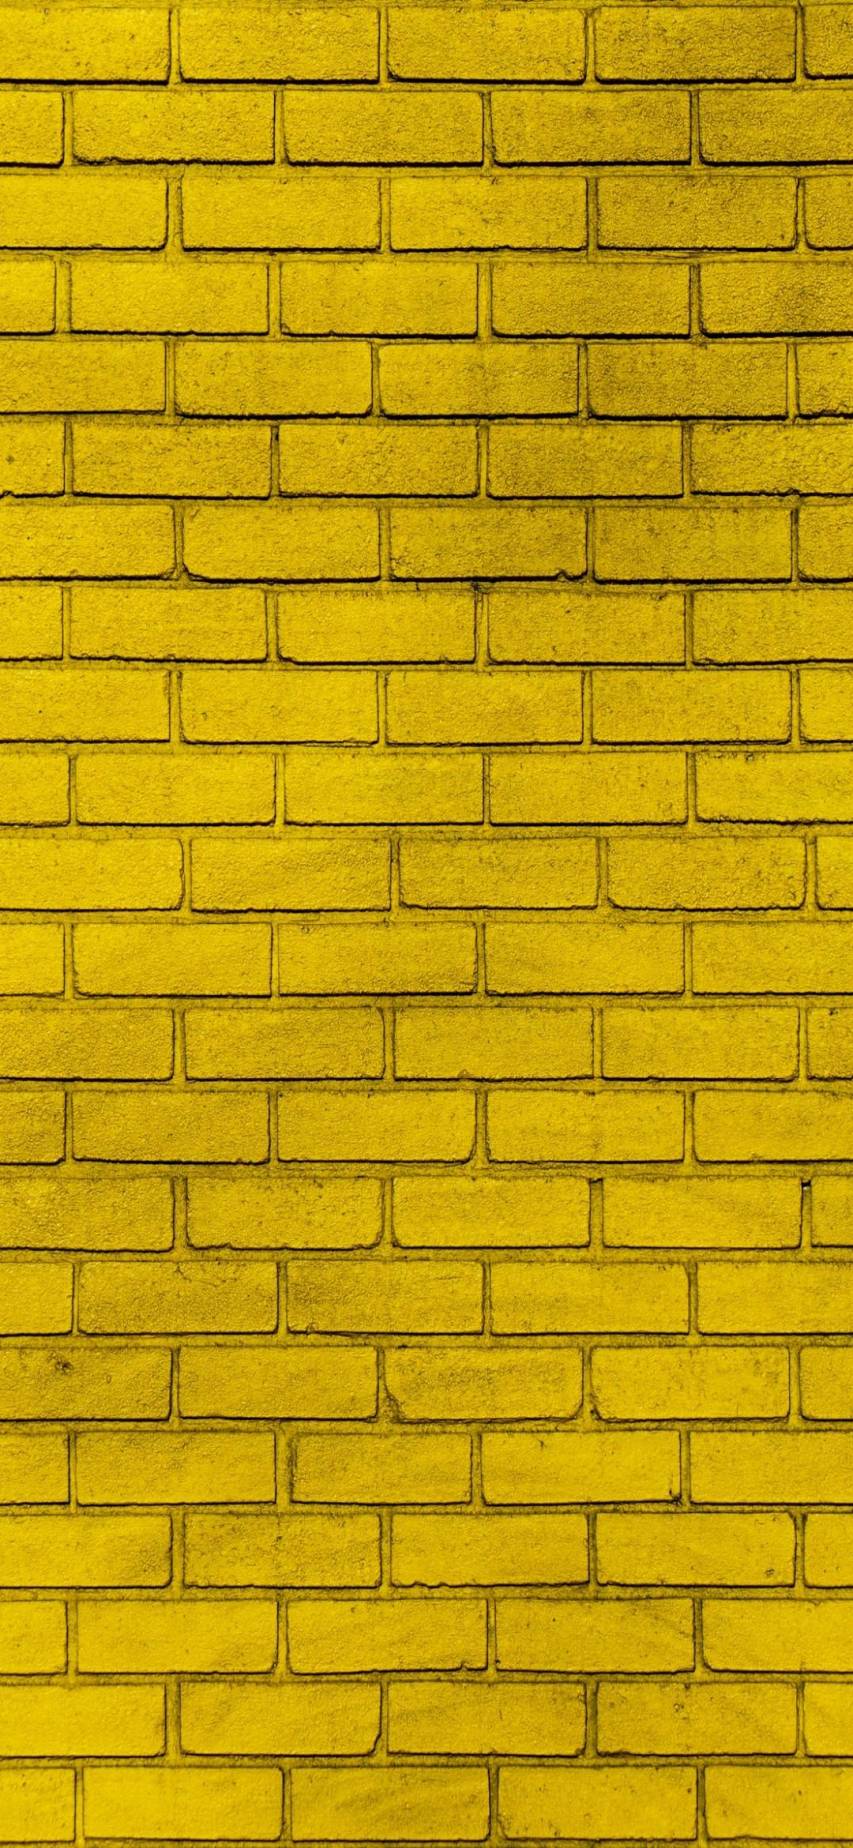 Yellow hd image Aesthetic Wallpapers WhatsApp